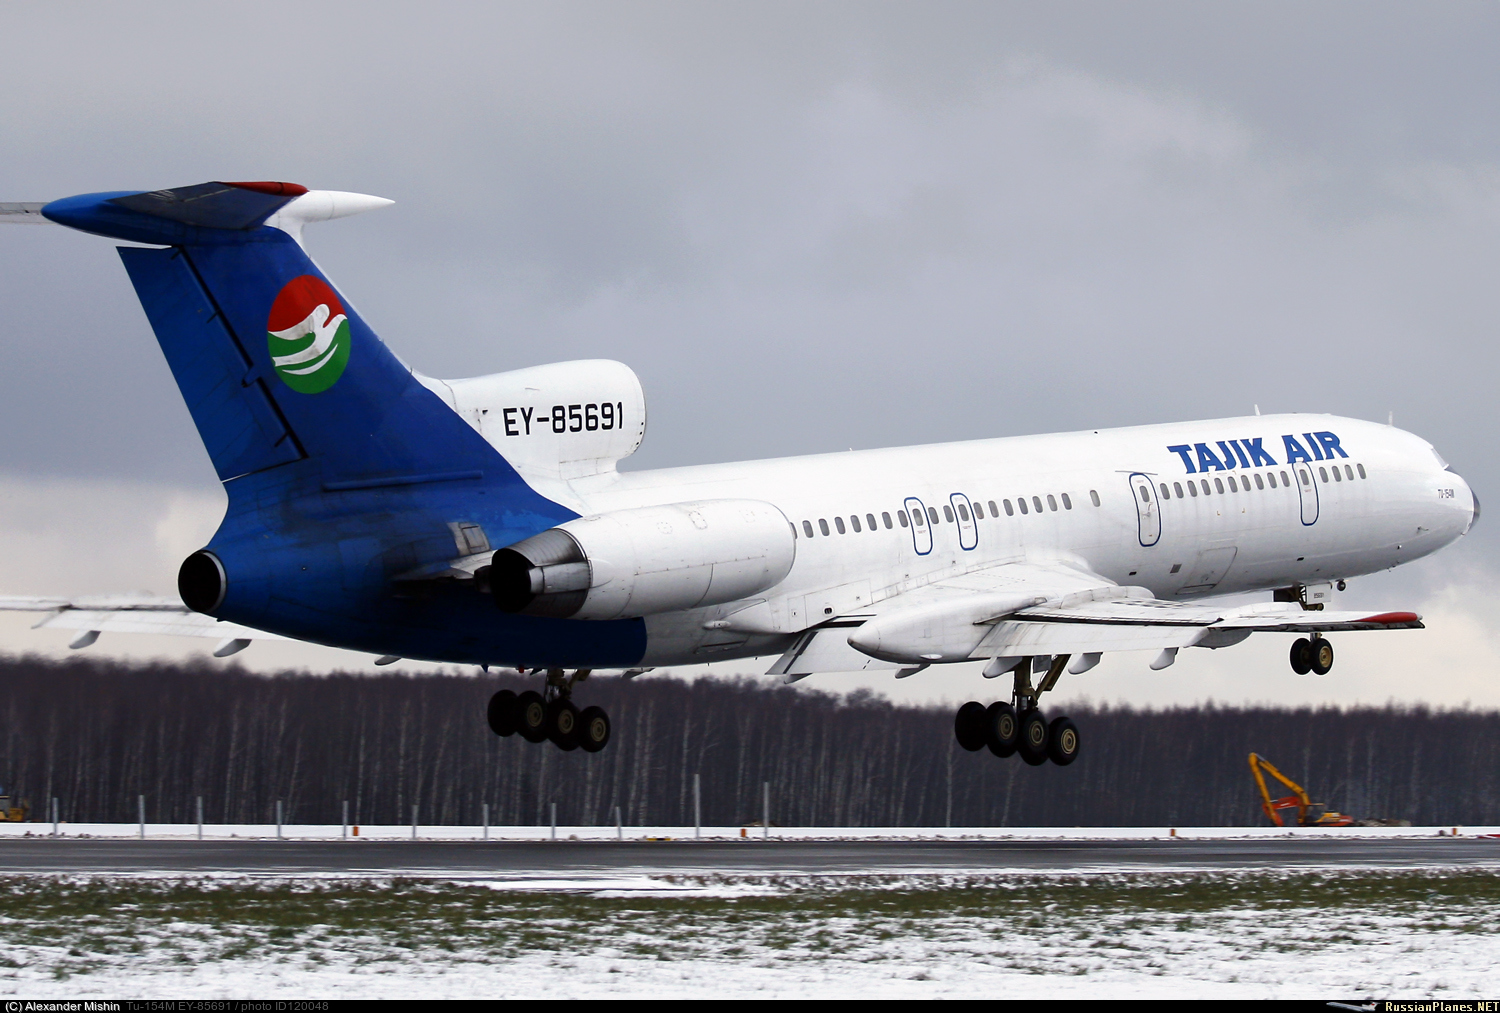 Авиакомпаний душанбе. Авиакомпания Tajik Air. Ту-154 м таджик Эйр. Самолёт Таджикистана таджик АИР. Самолет ту 154 б таджик айр.